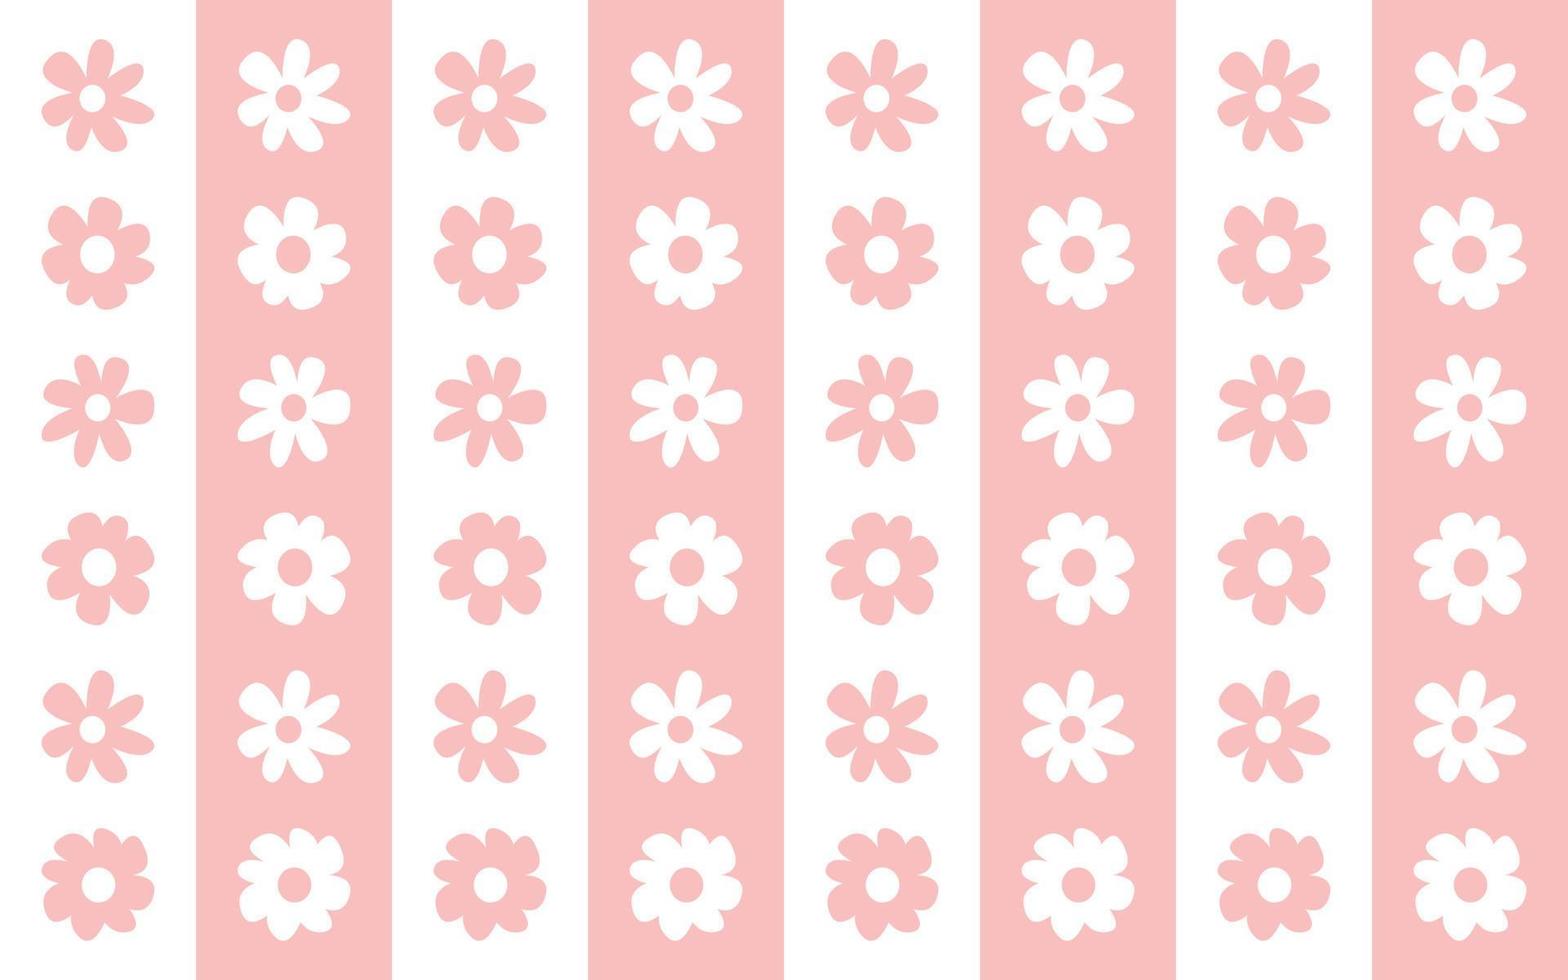 motivo floreale rosa e bianco a righe floreali senza cuciture per la stampa di tessuti da parete vettore